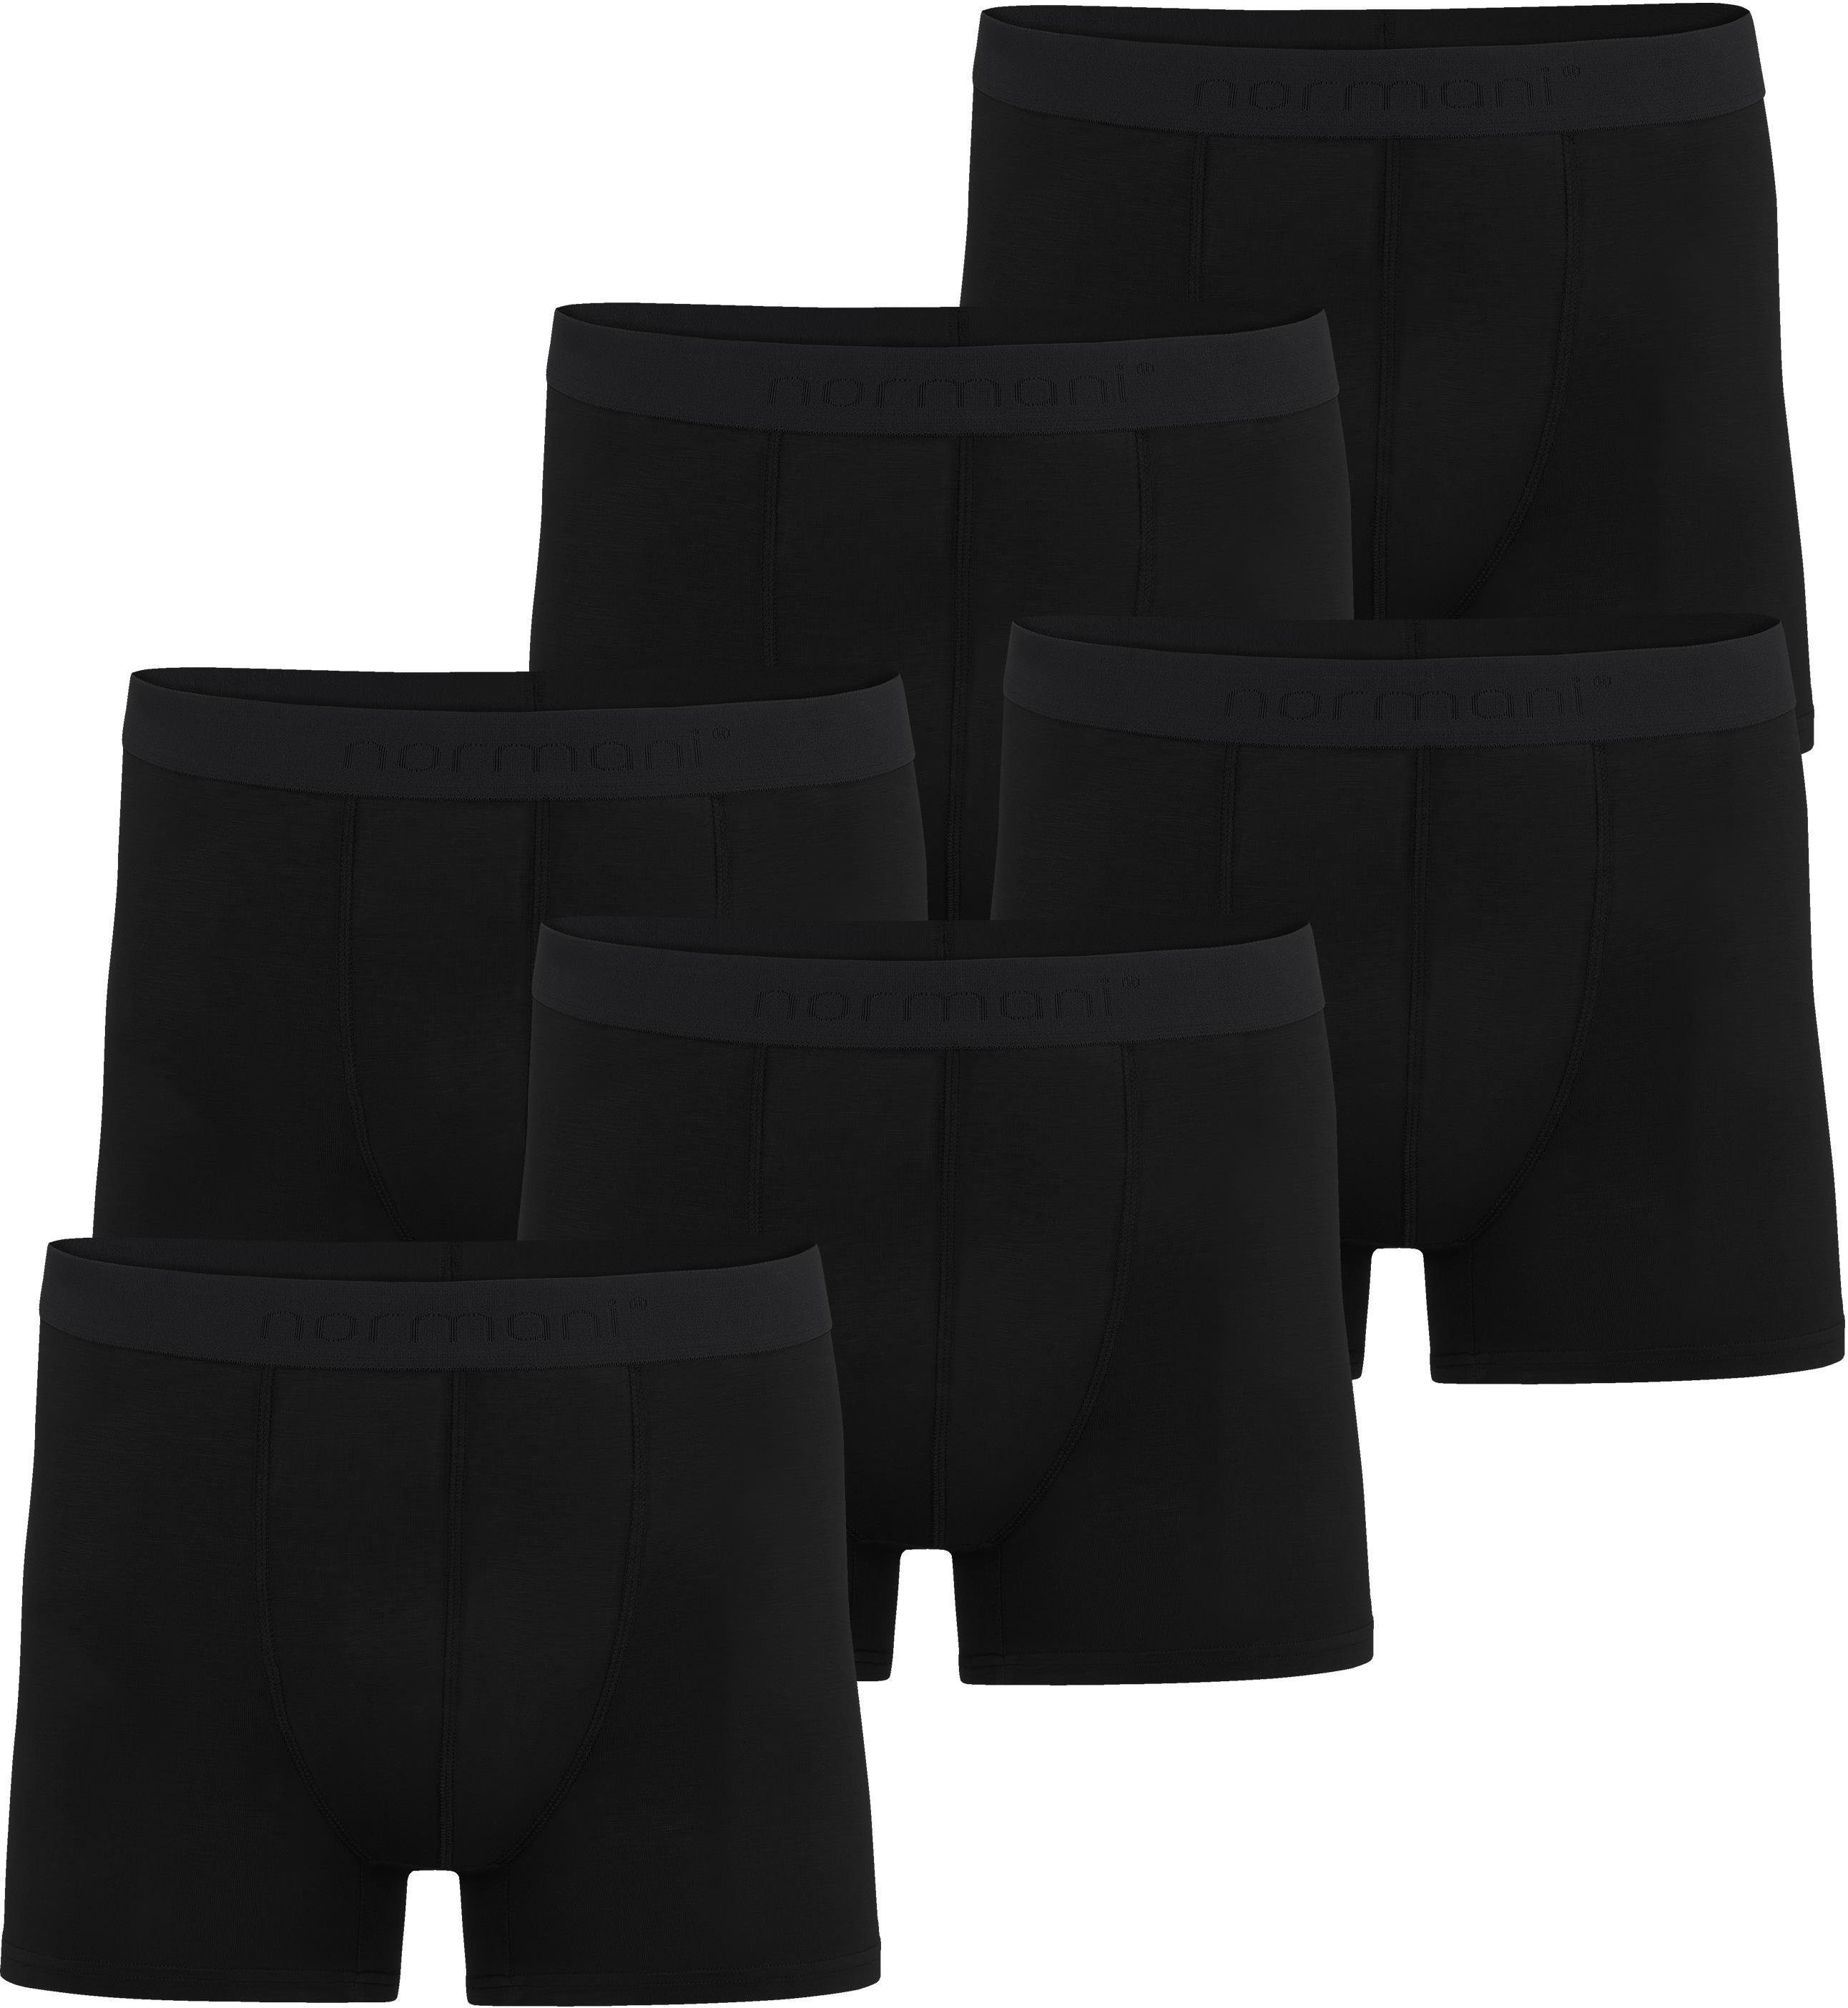 normani Boxershorts 6 Herren Boxershorts aus Bambus-Viskose Cubao Unterhosen für Männer aus weicher Viskose Schwarz